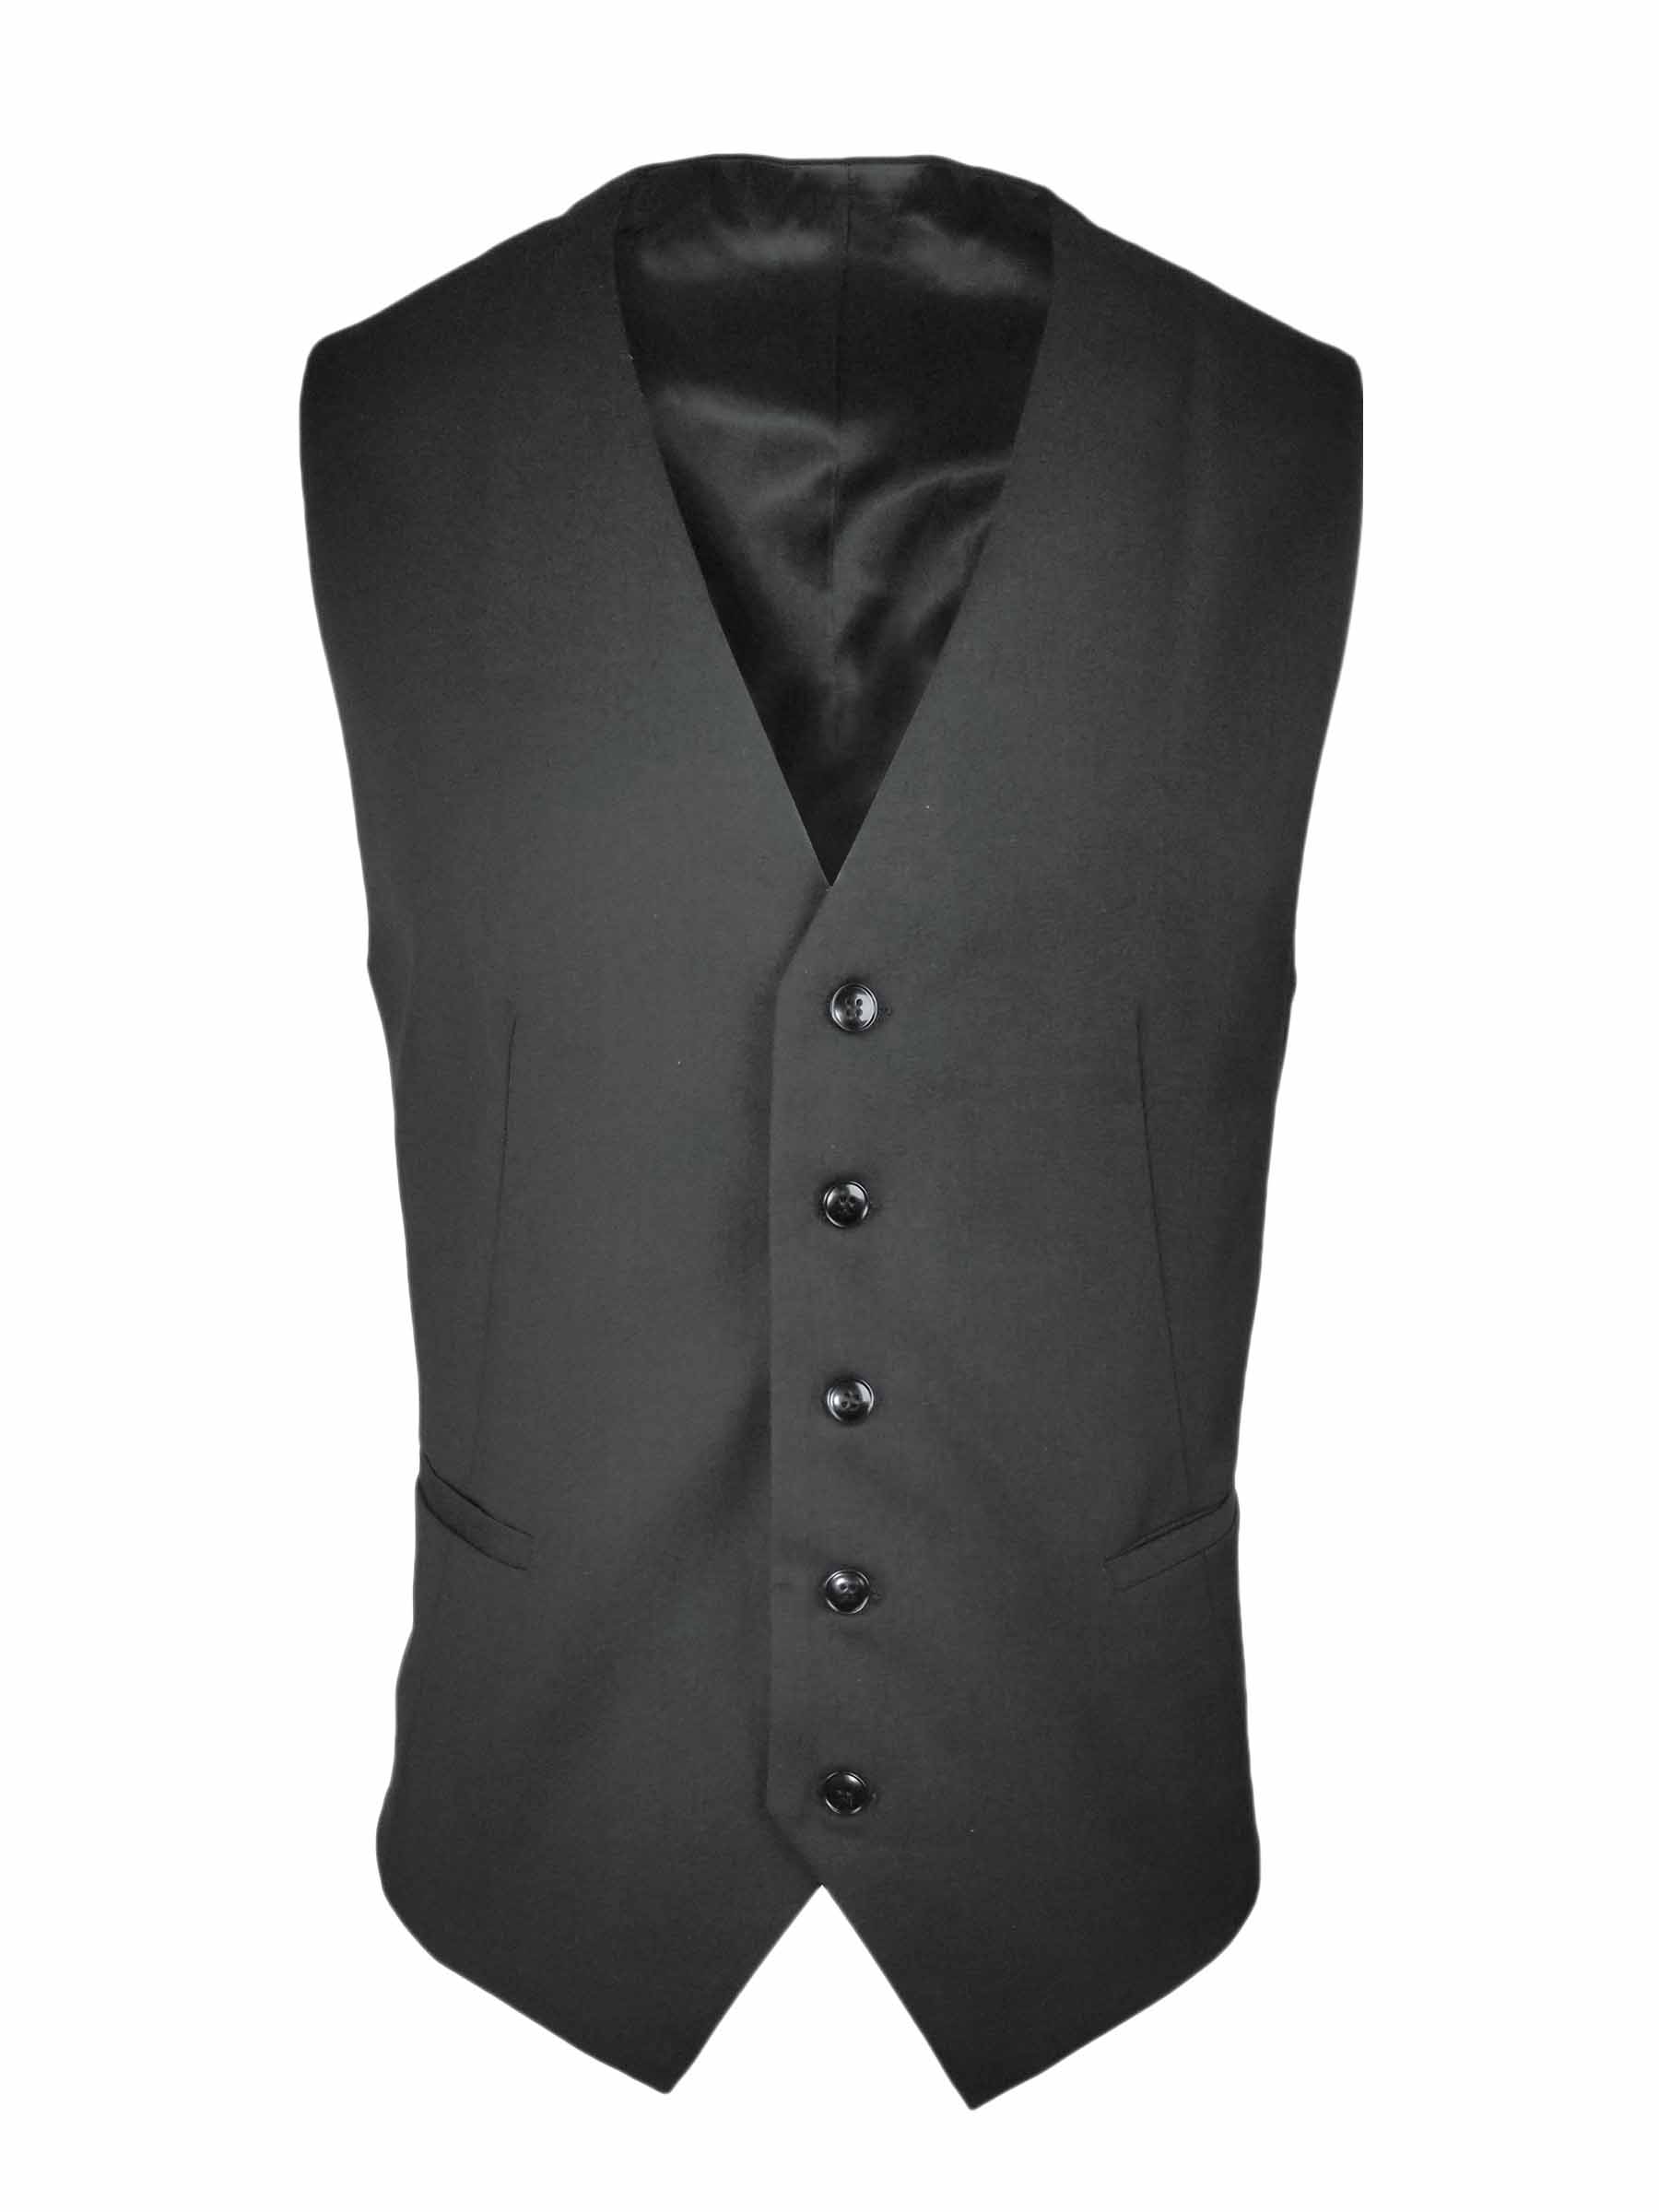 Men's Vest - Charcoal Wool Blend - Uniform Edit